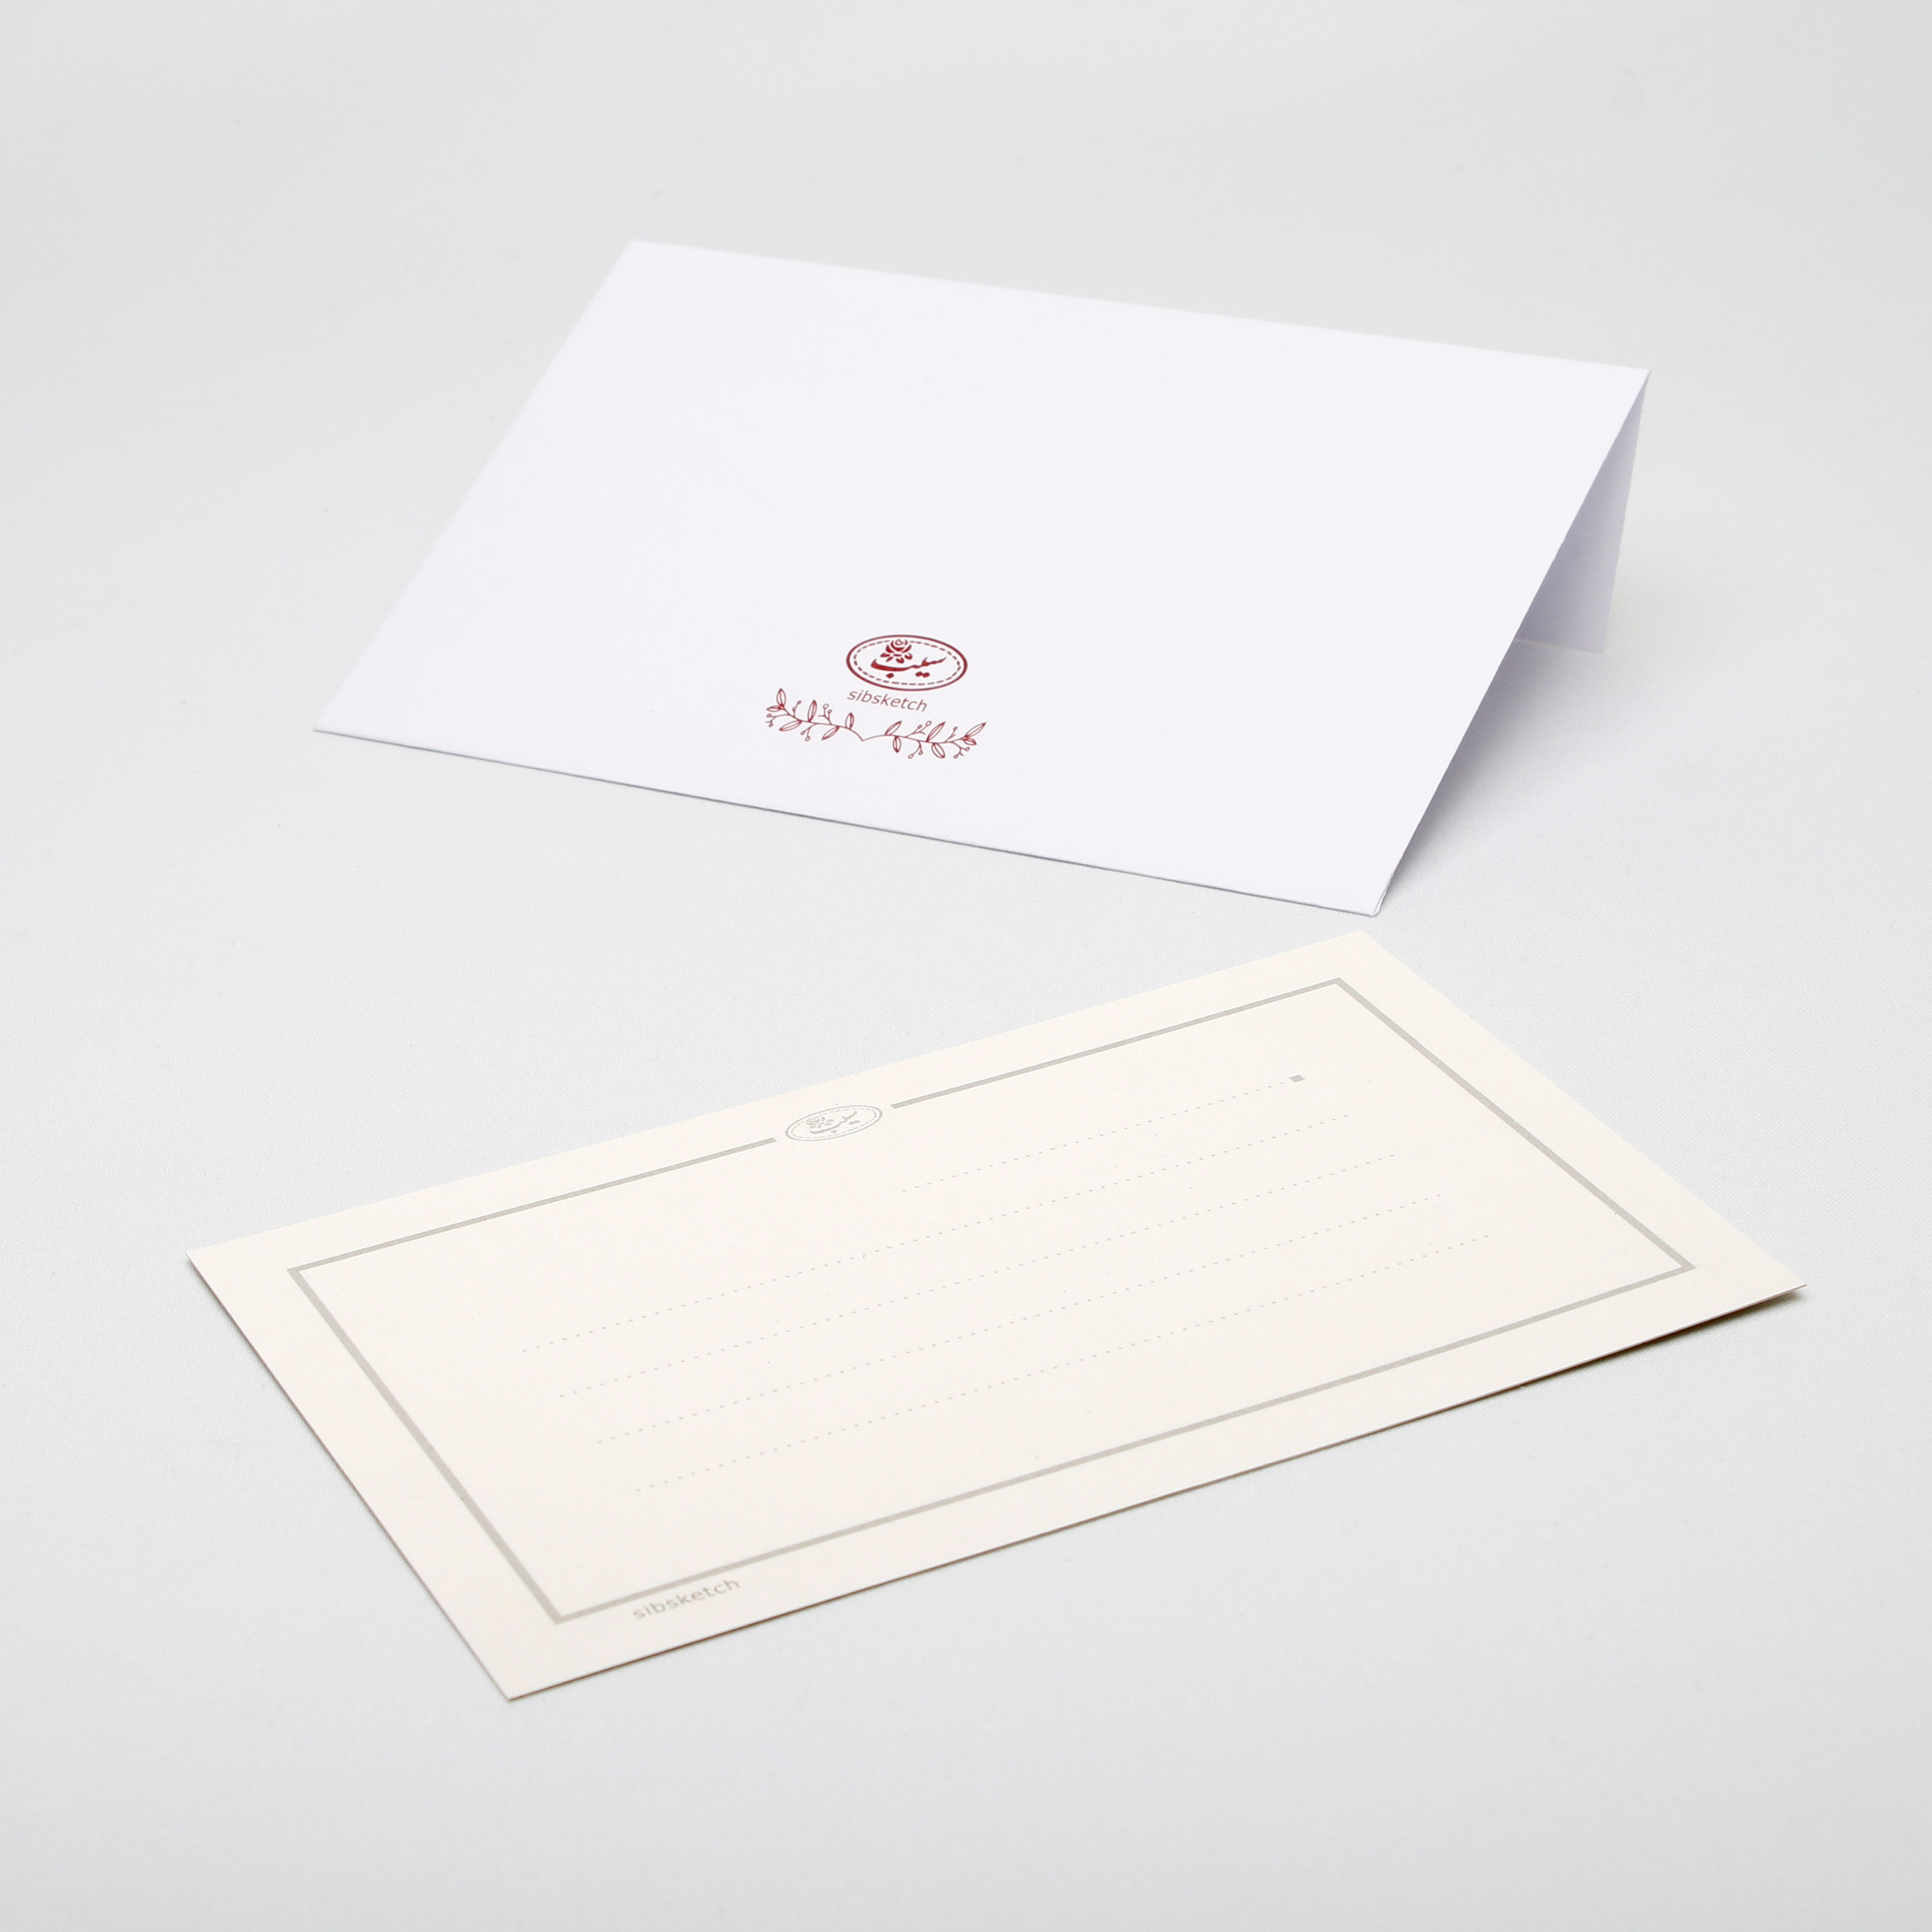 کارت پستال انتشارات سیبان مدل Postal Card-01 بسته 4 عددی